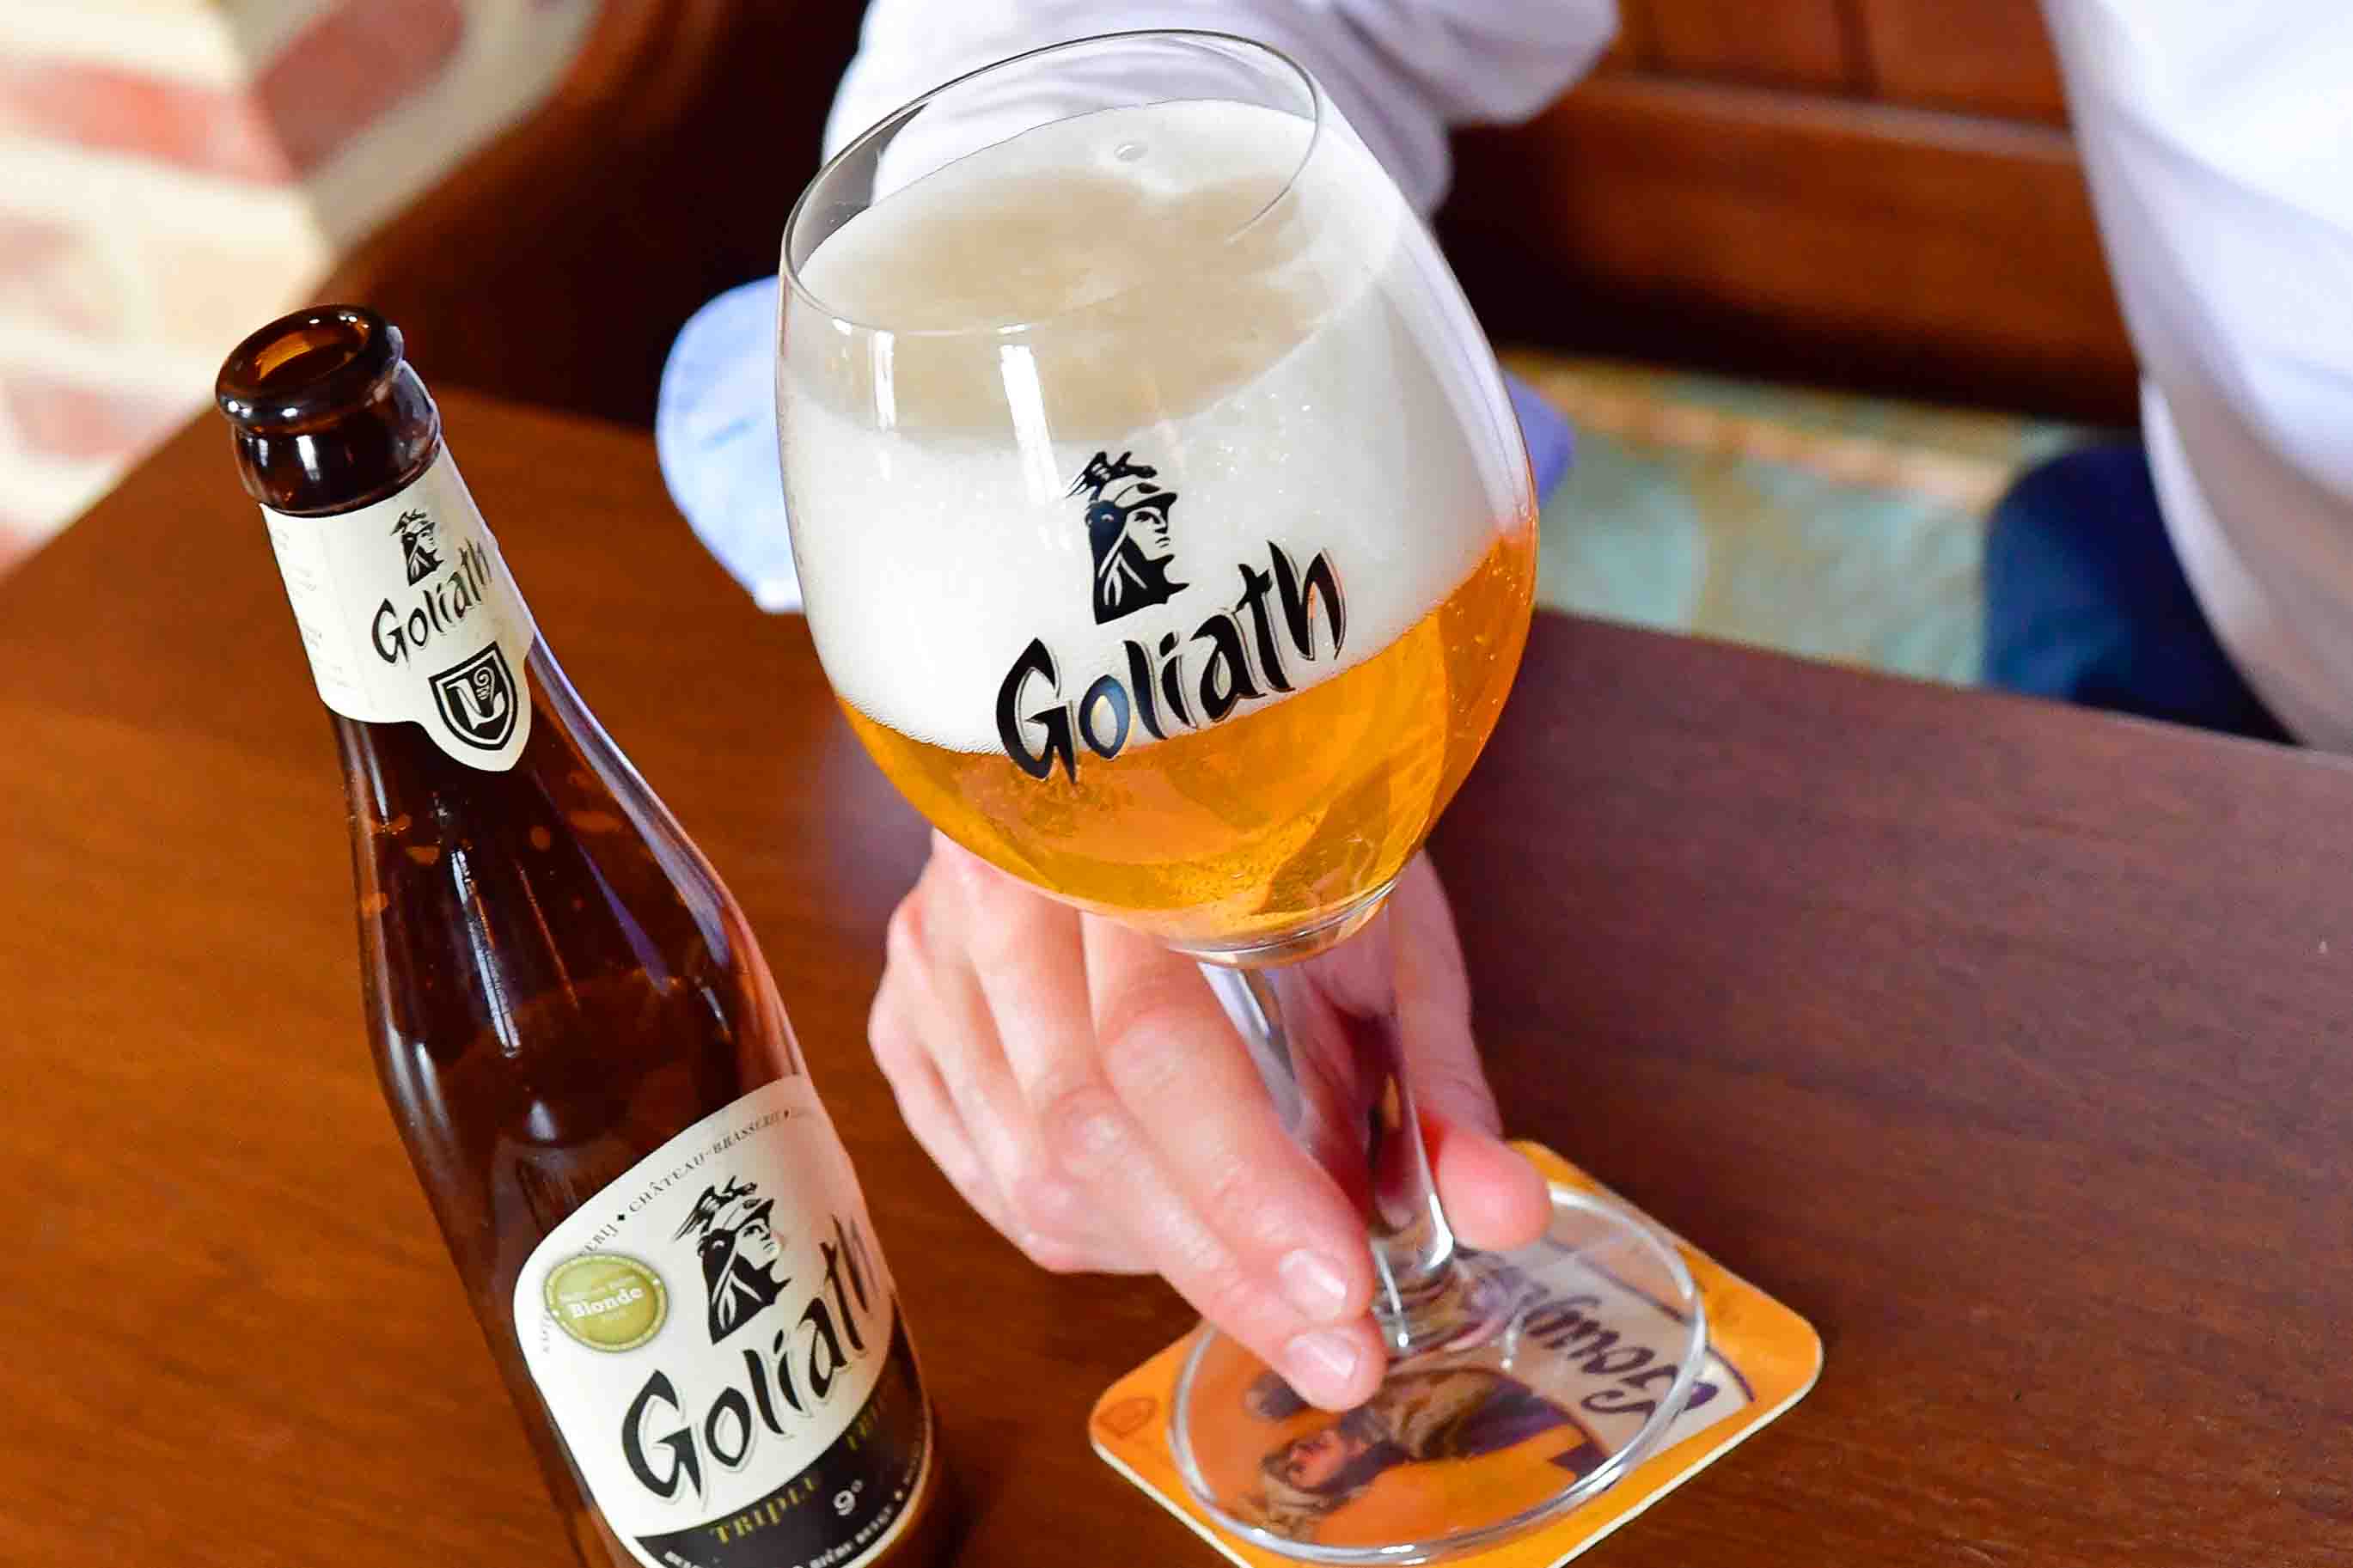 La Goliath, bière blonde - Brasserie des Légendes (c) beertourism